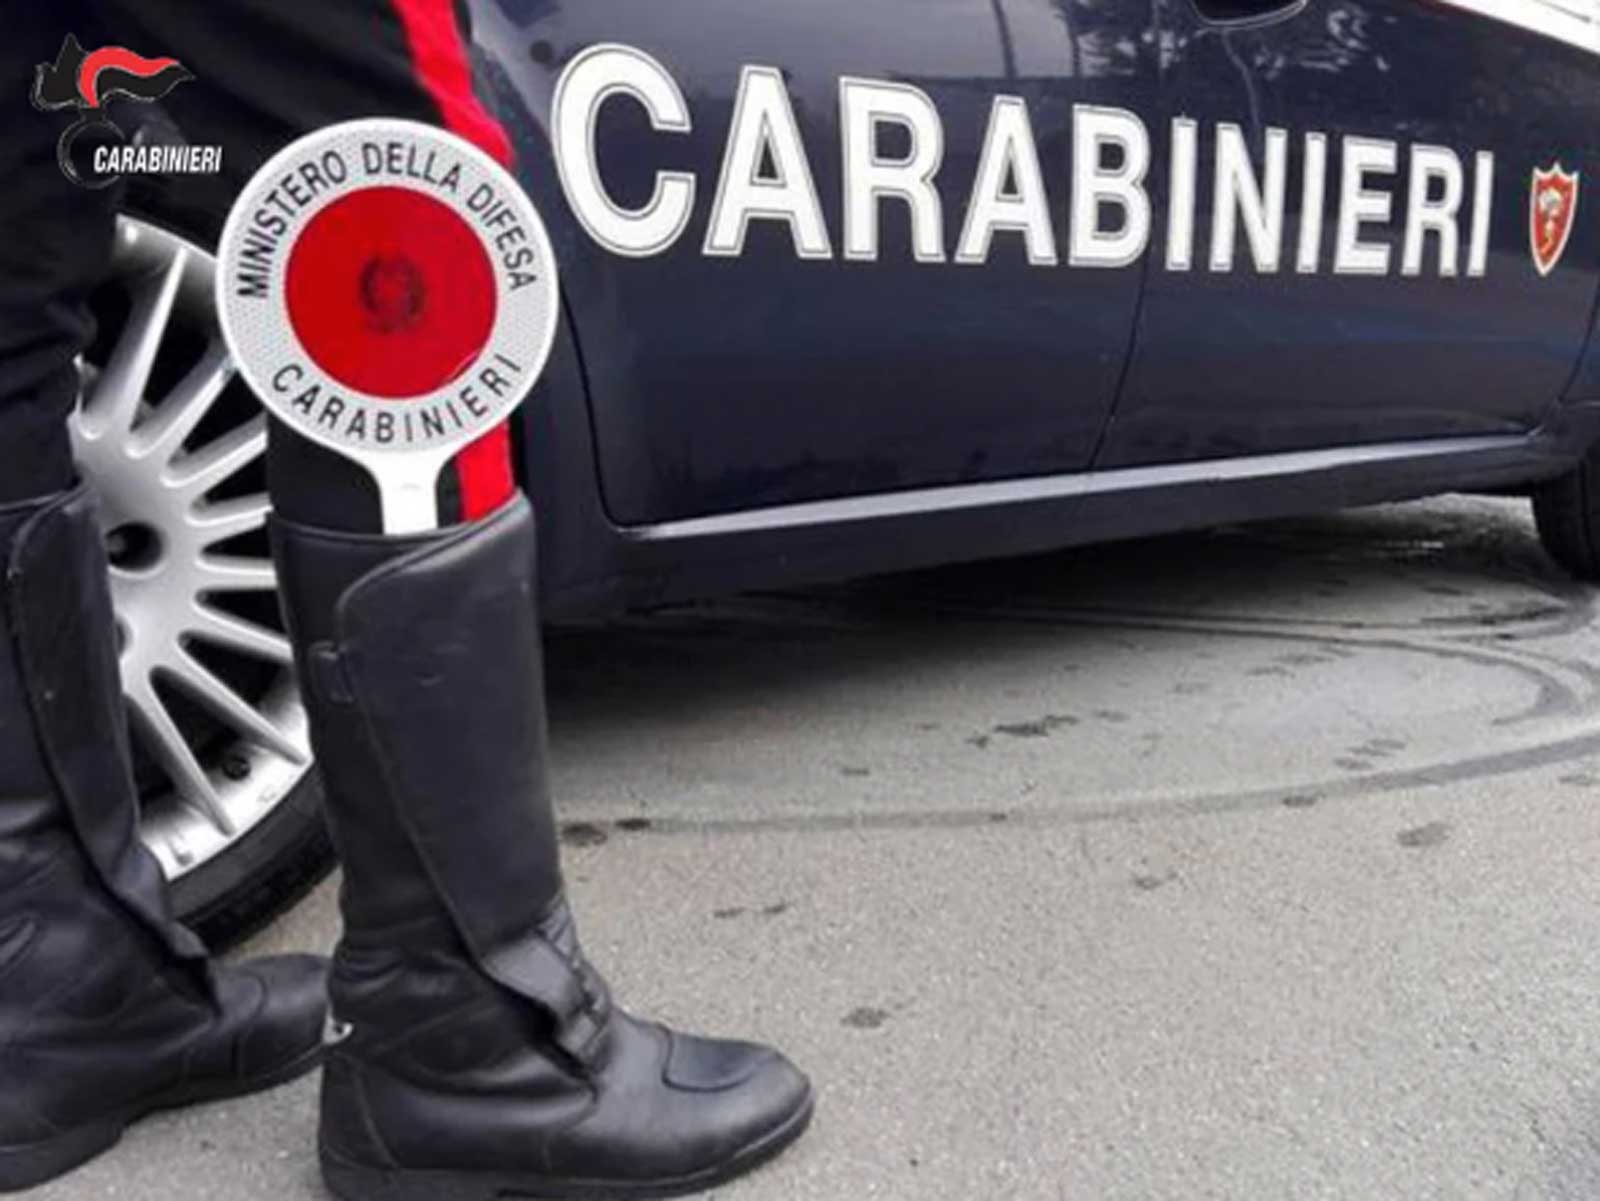 Carabinieri, foto generica di una pattuglia a Guidonia Montecelio